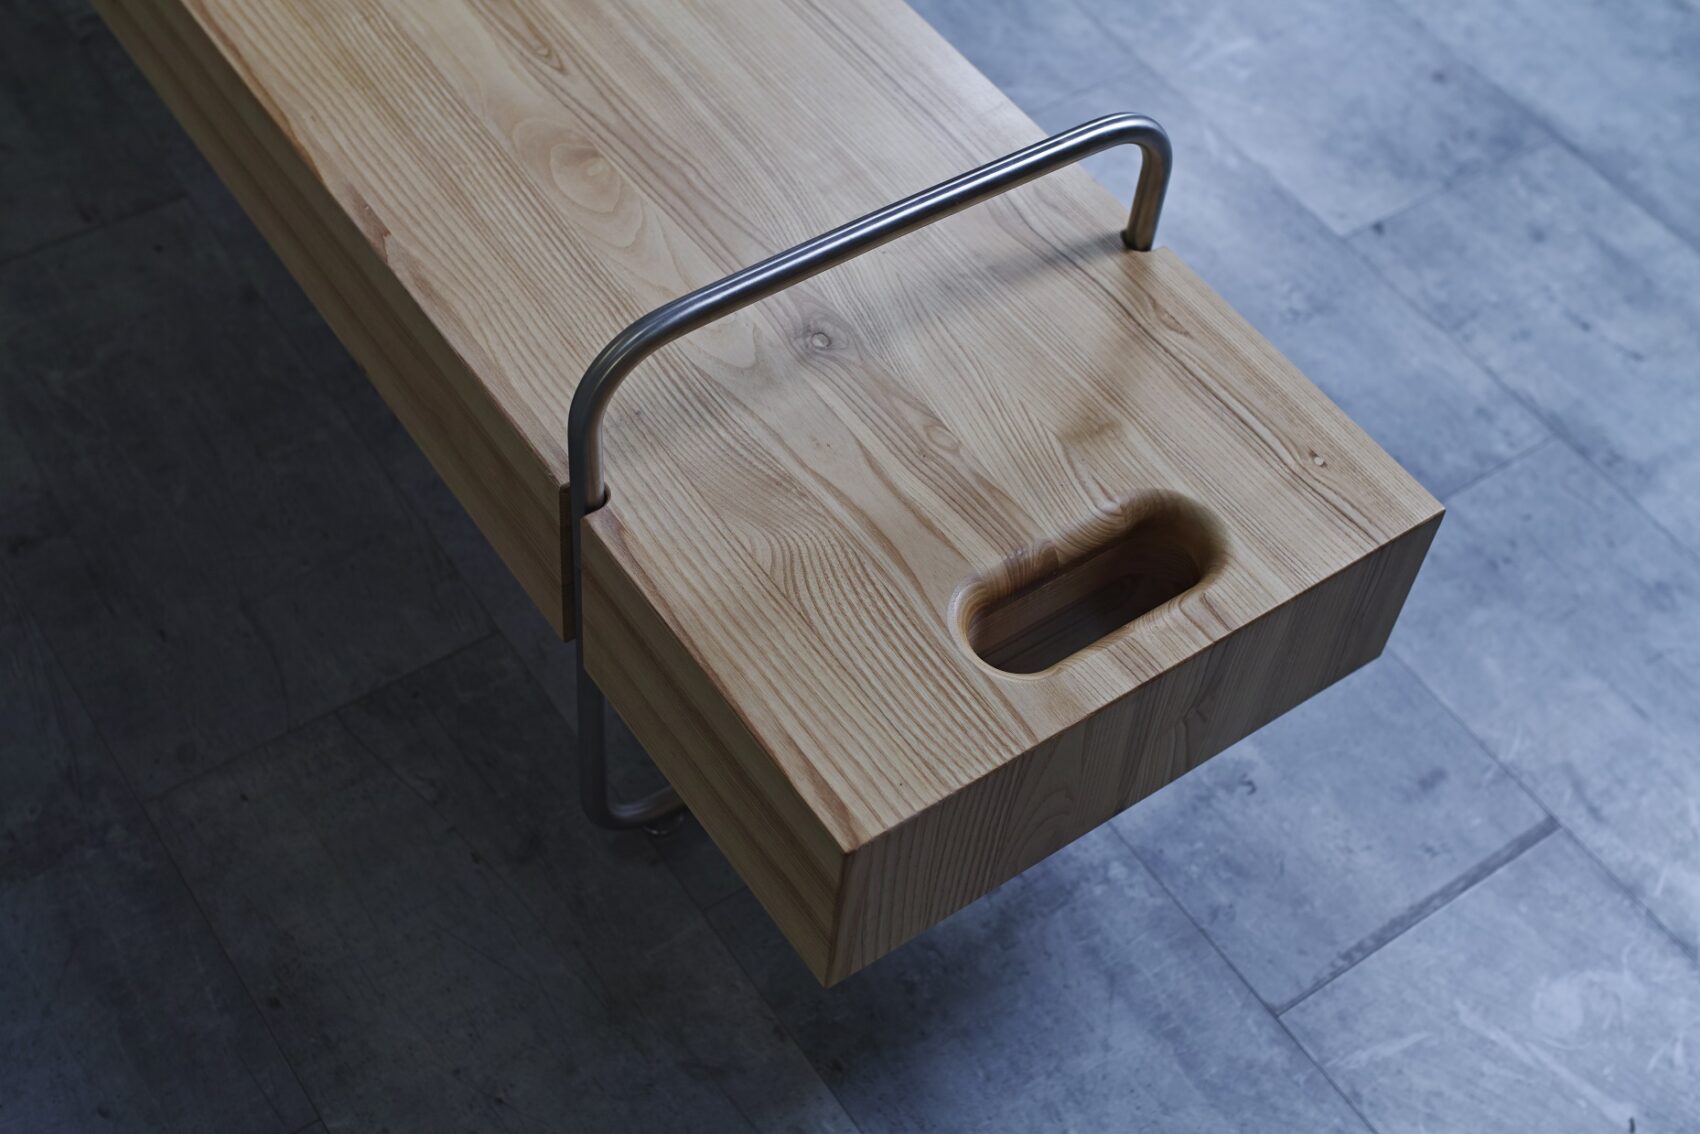 jednoduchá lavička bez opěradla s tabletem - detail madla